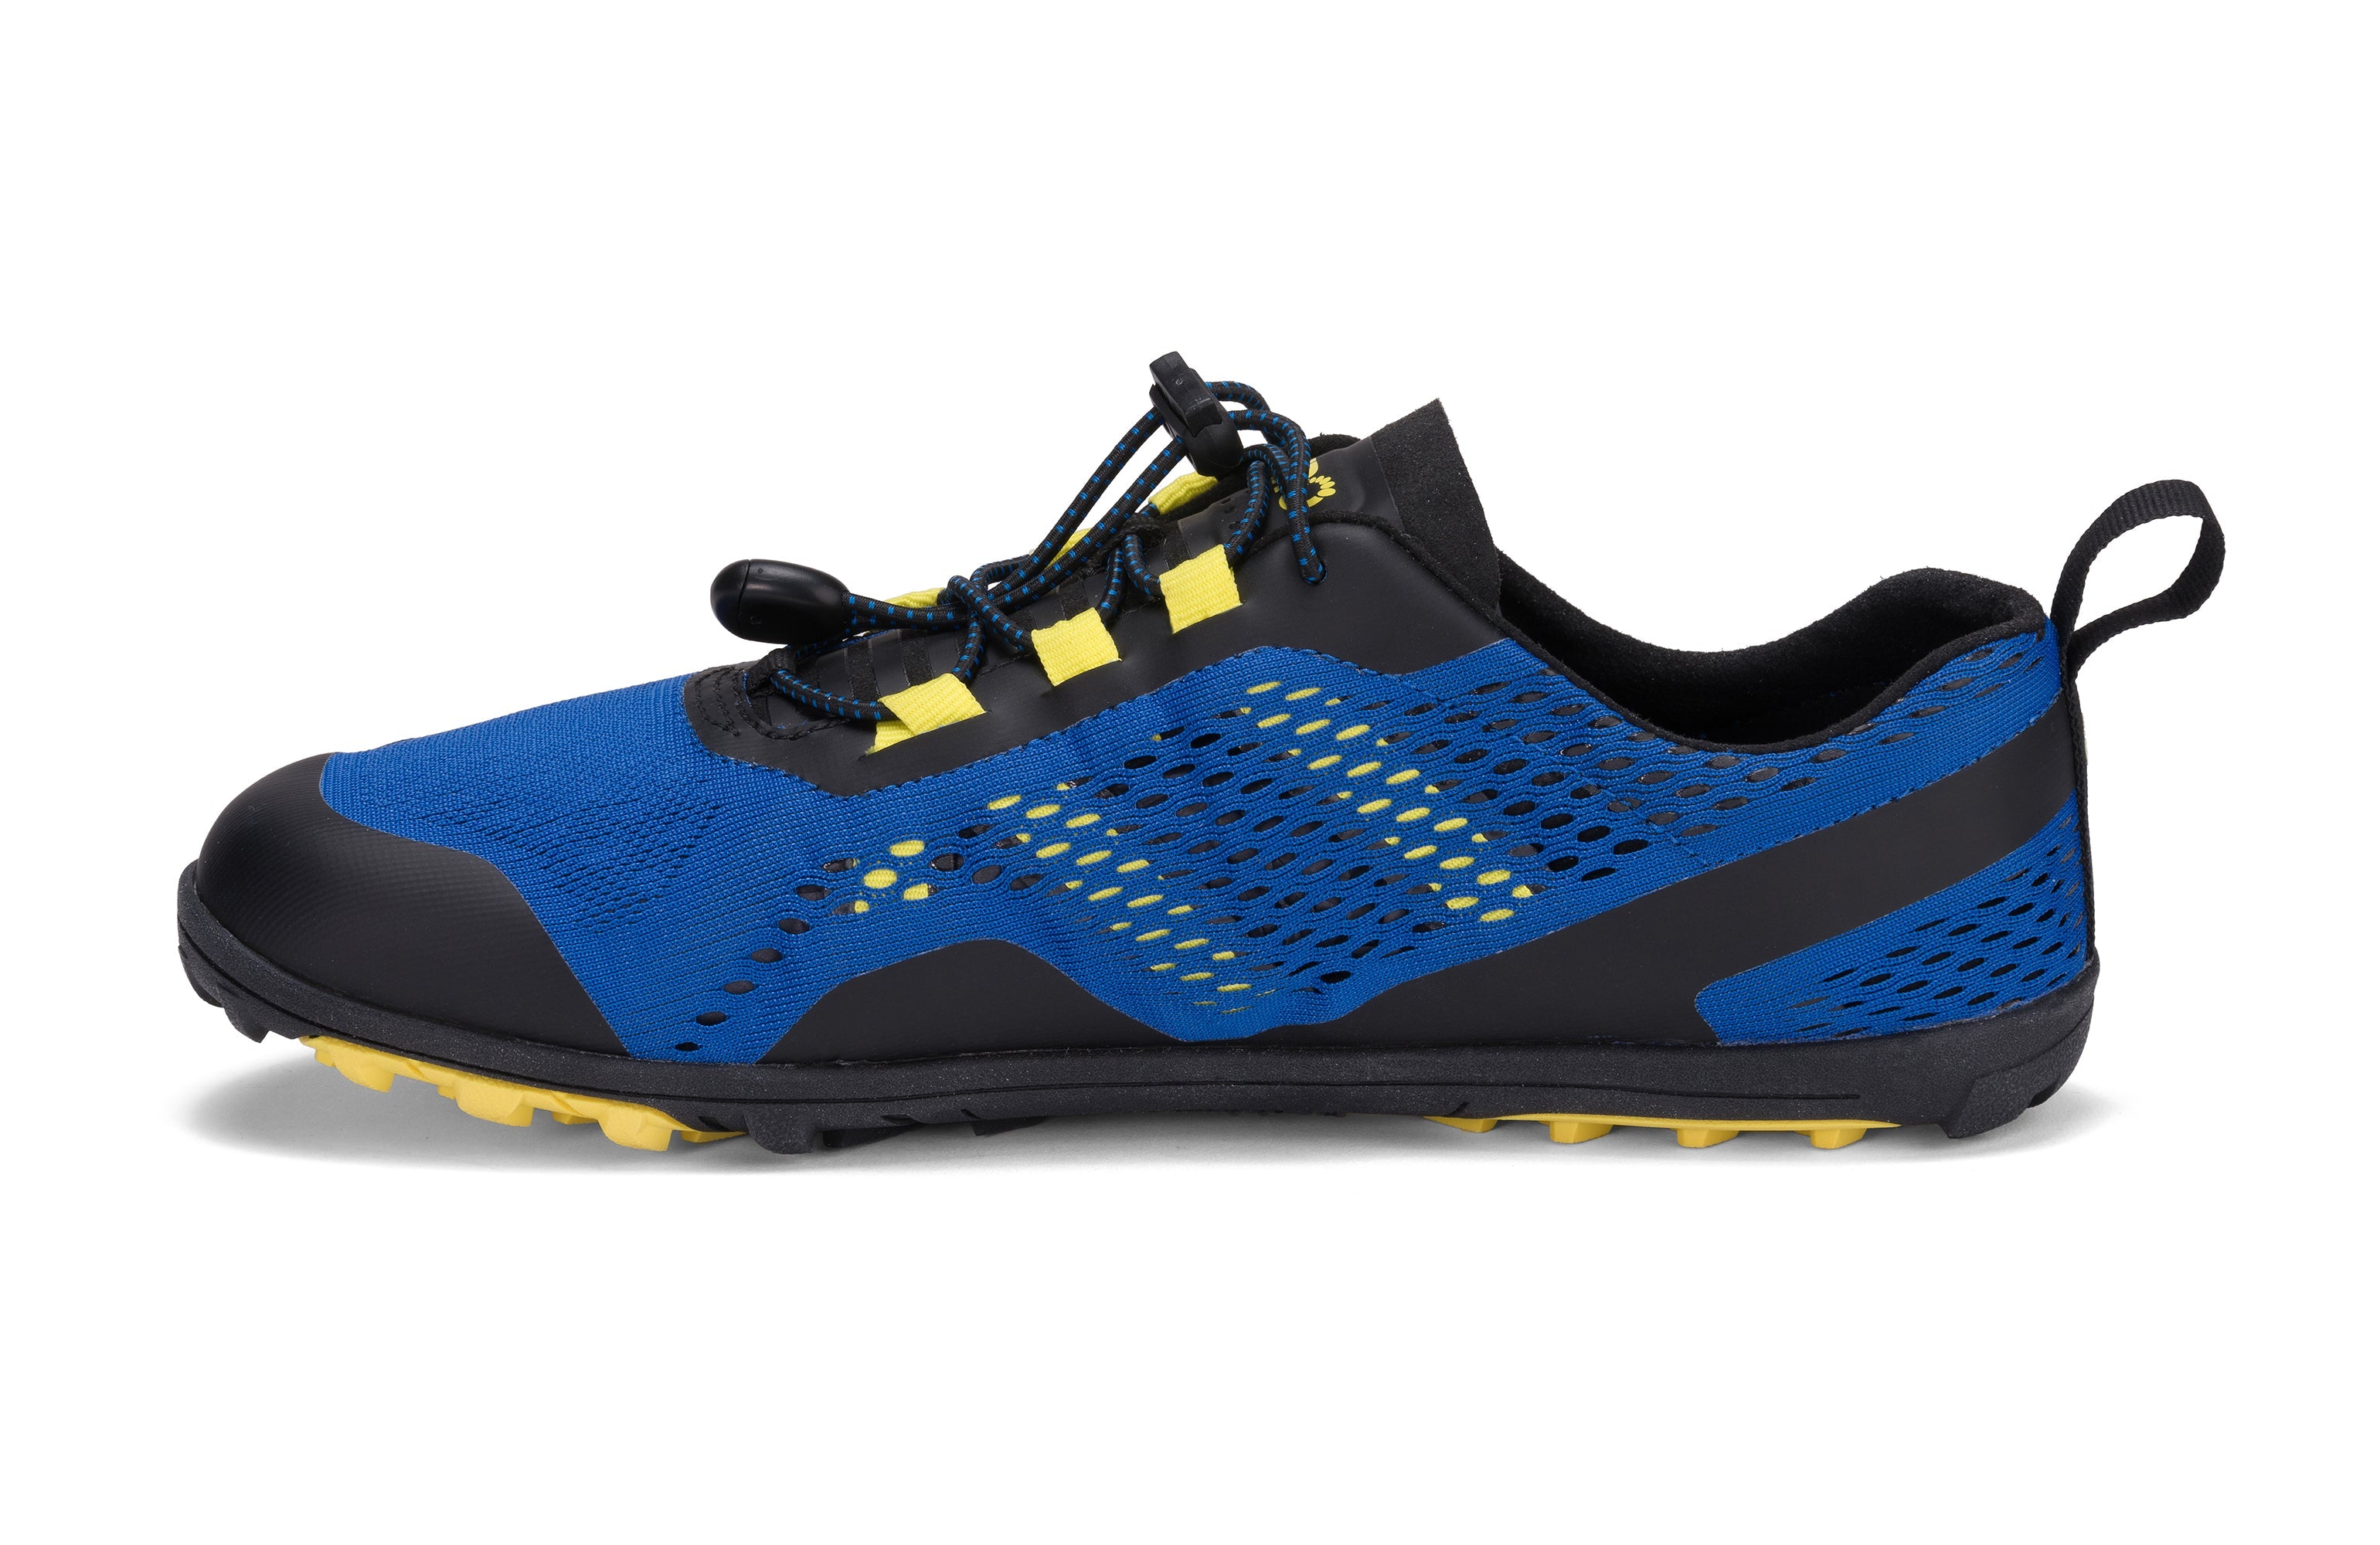 Xero Shoes Aqua X Sport barfods vand træningssko til mænd i farven blue / yellow, inderside